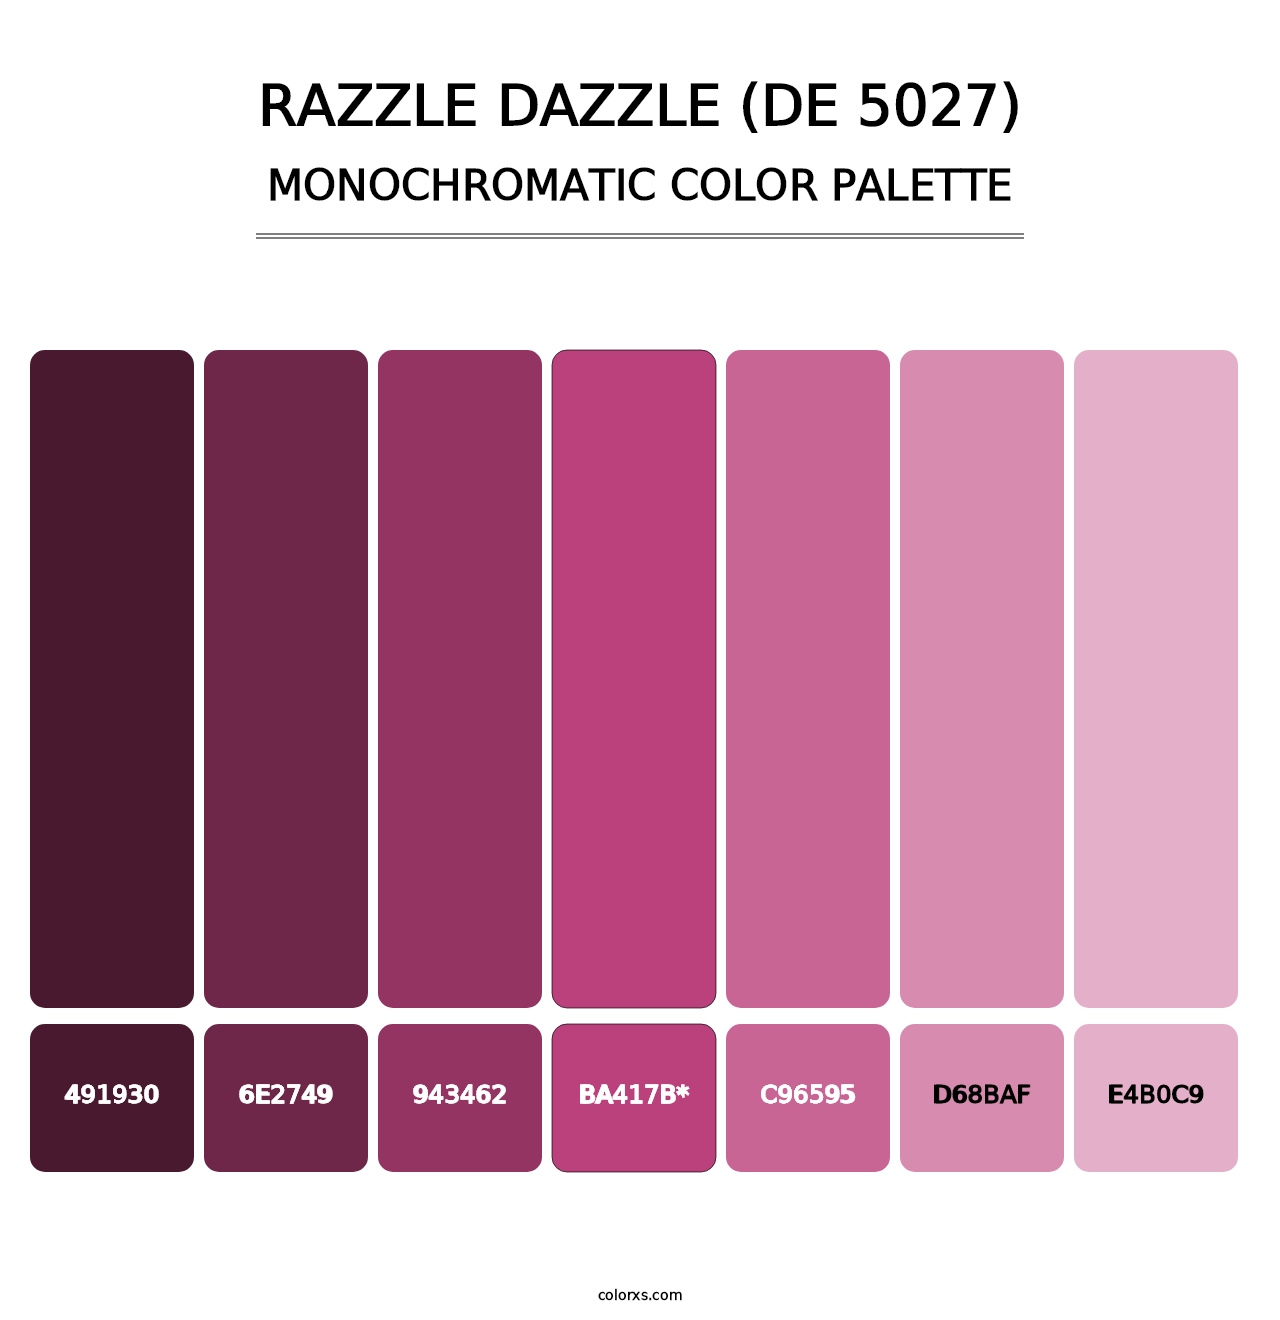 Razzle Dazzle (DE 5027) - Monochromatic Color Palette